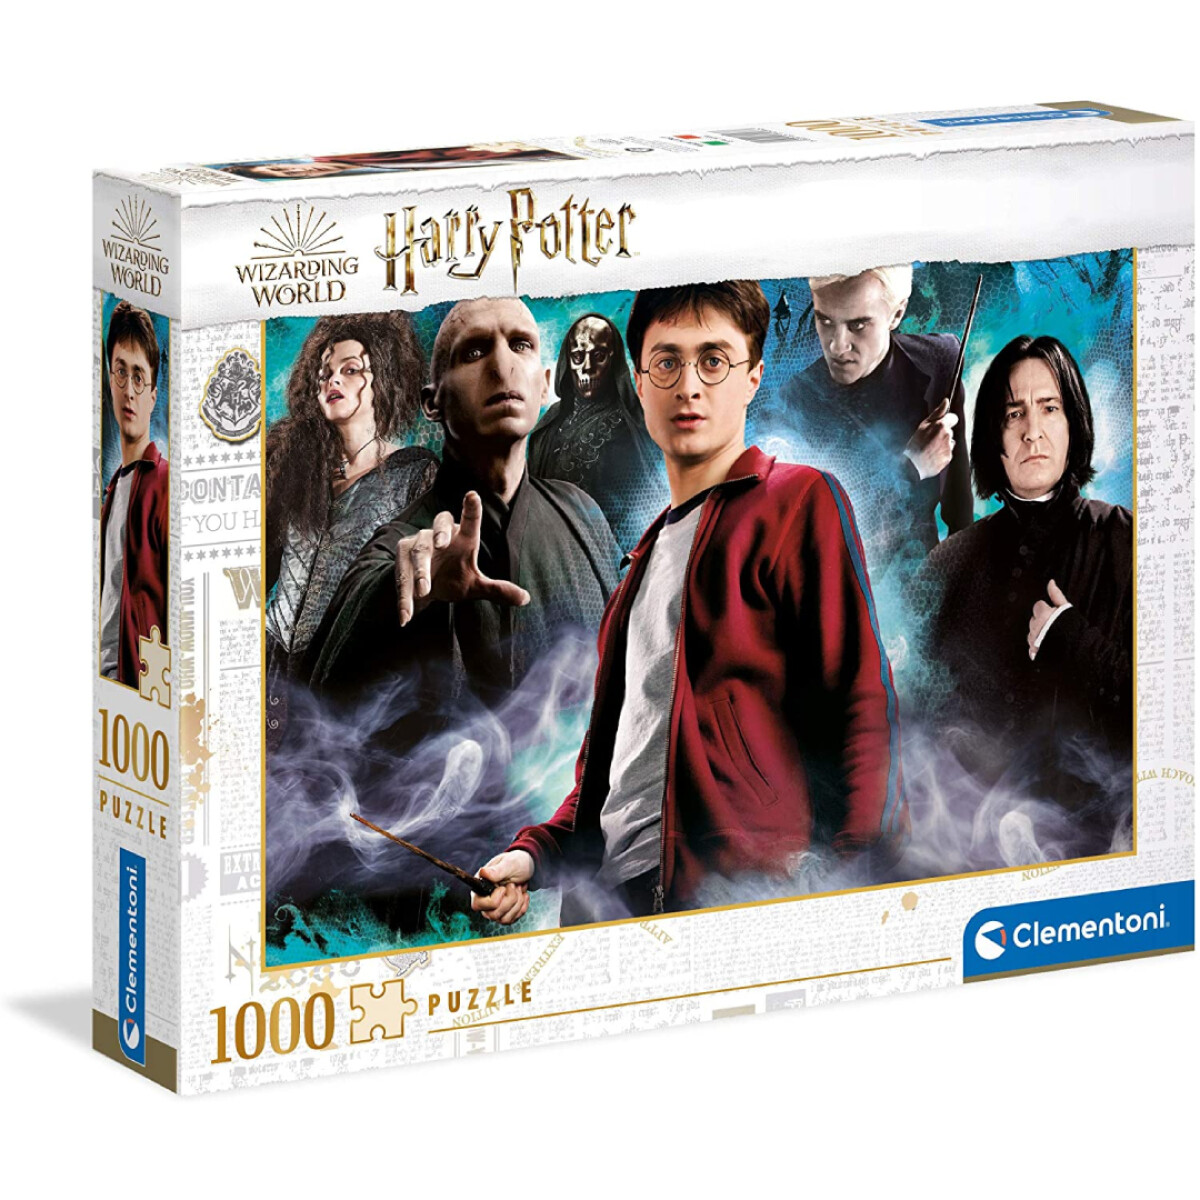 Puzzle Clementoni Harry Potter 1000 Piezas 39586 - 001 